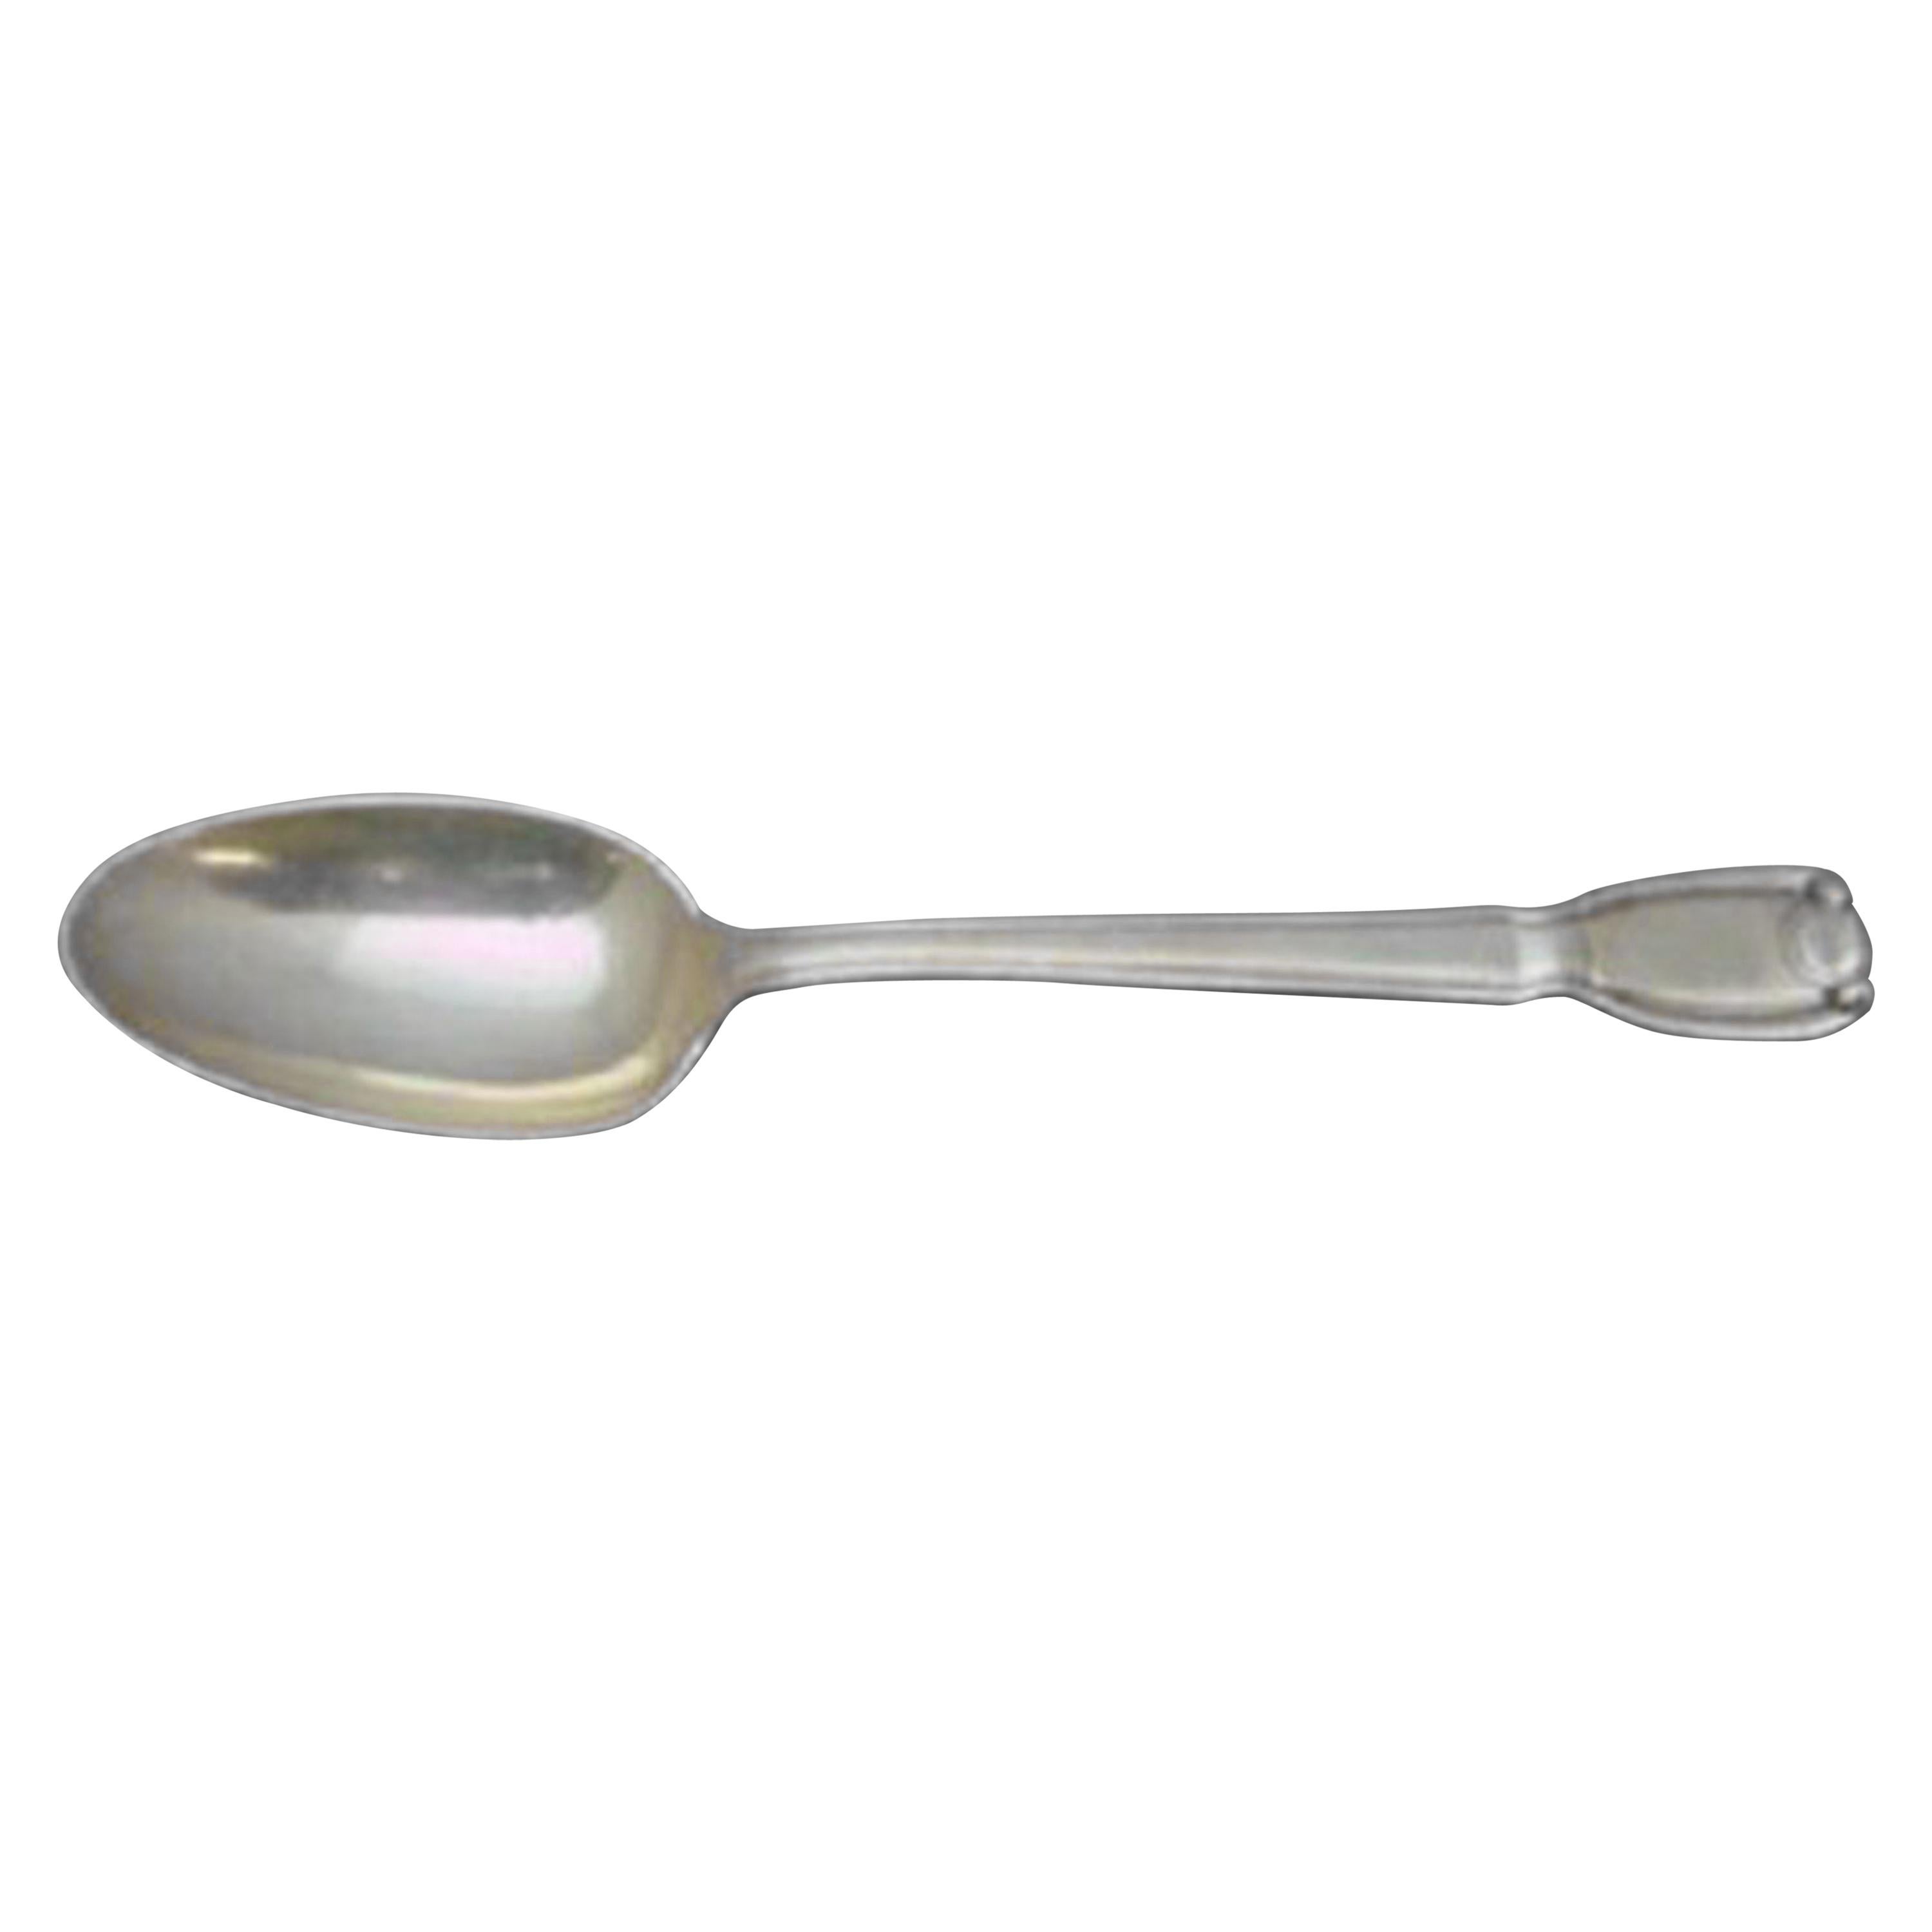 Castilian by Tiffany & Co. Sterling Silver Coffee Spoon